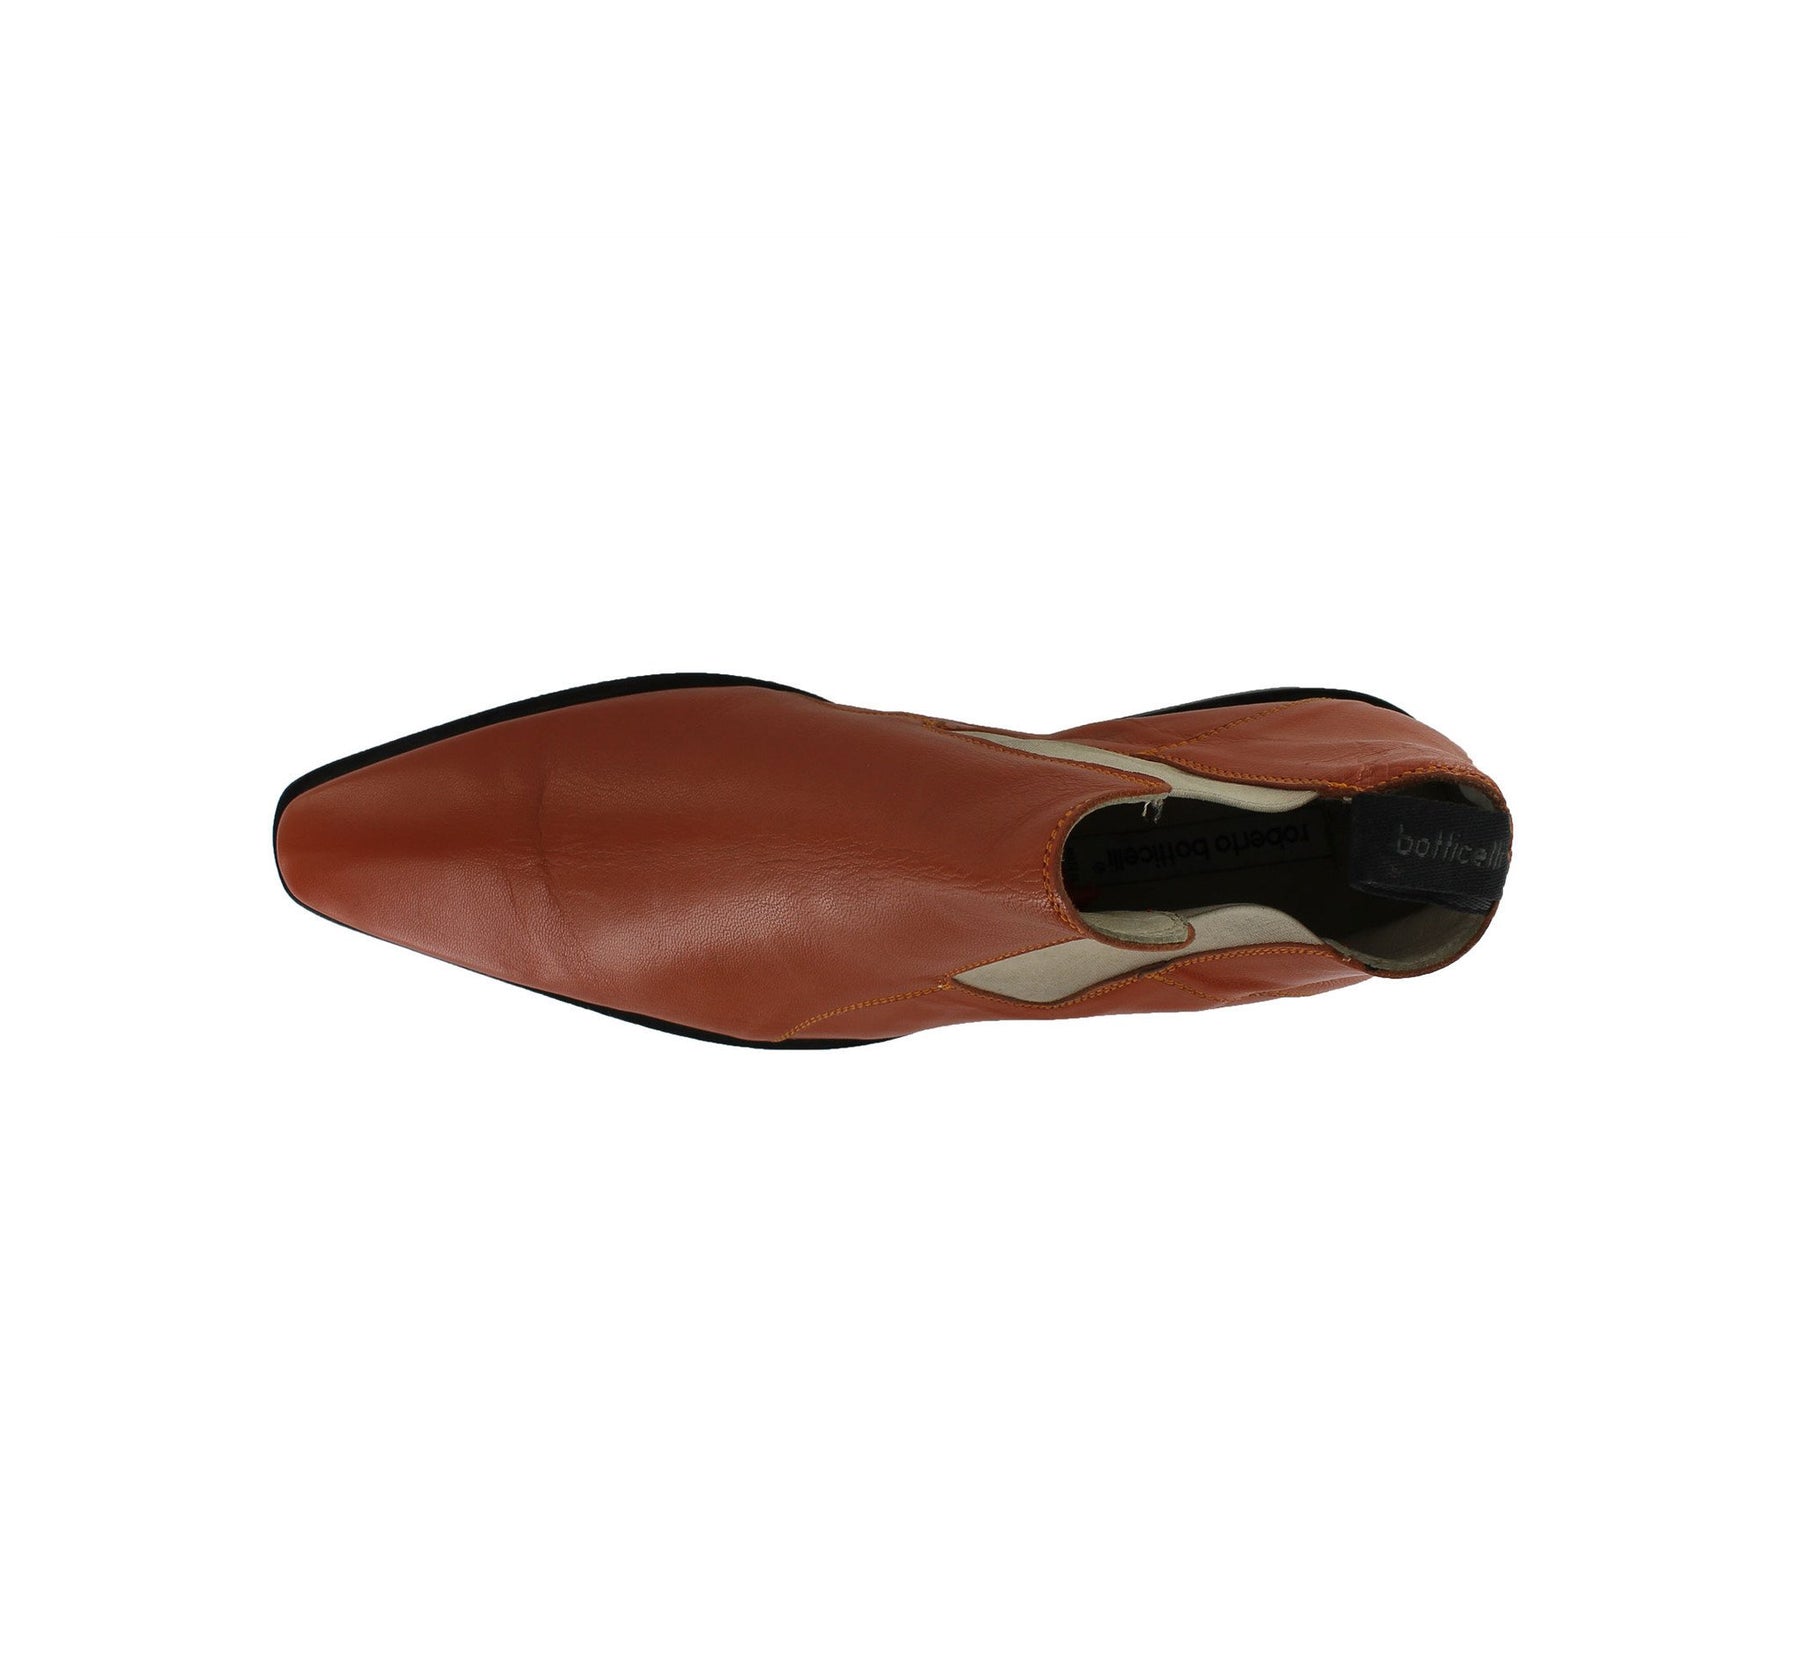 7061 - Cognac Chelsea Boot